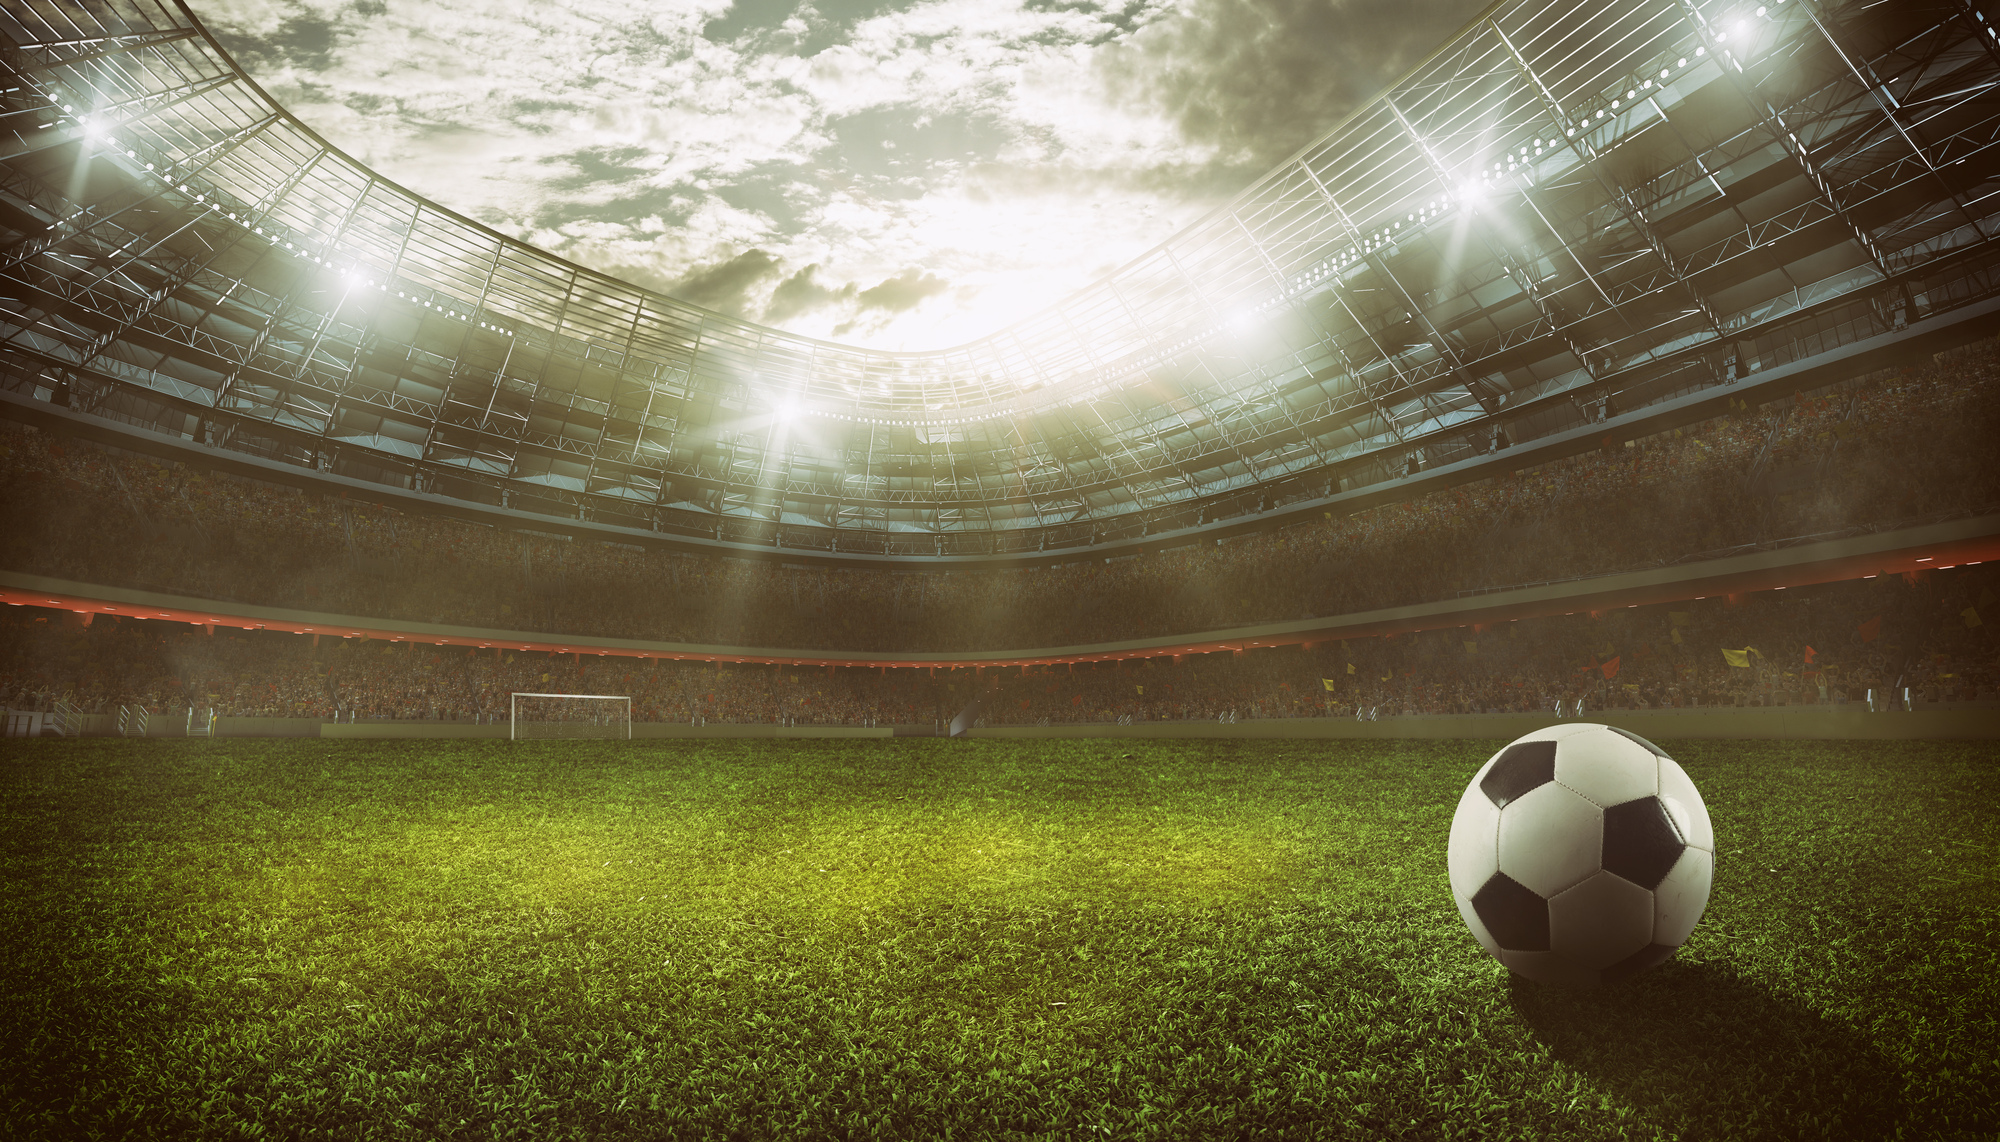 【試合前の5つのNG】サッカー・フットサルの試合で最高のパフォーマンスを発揮するために。